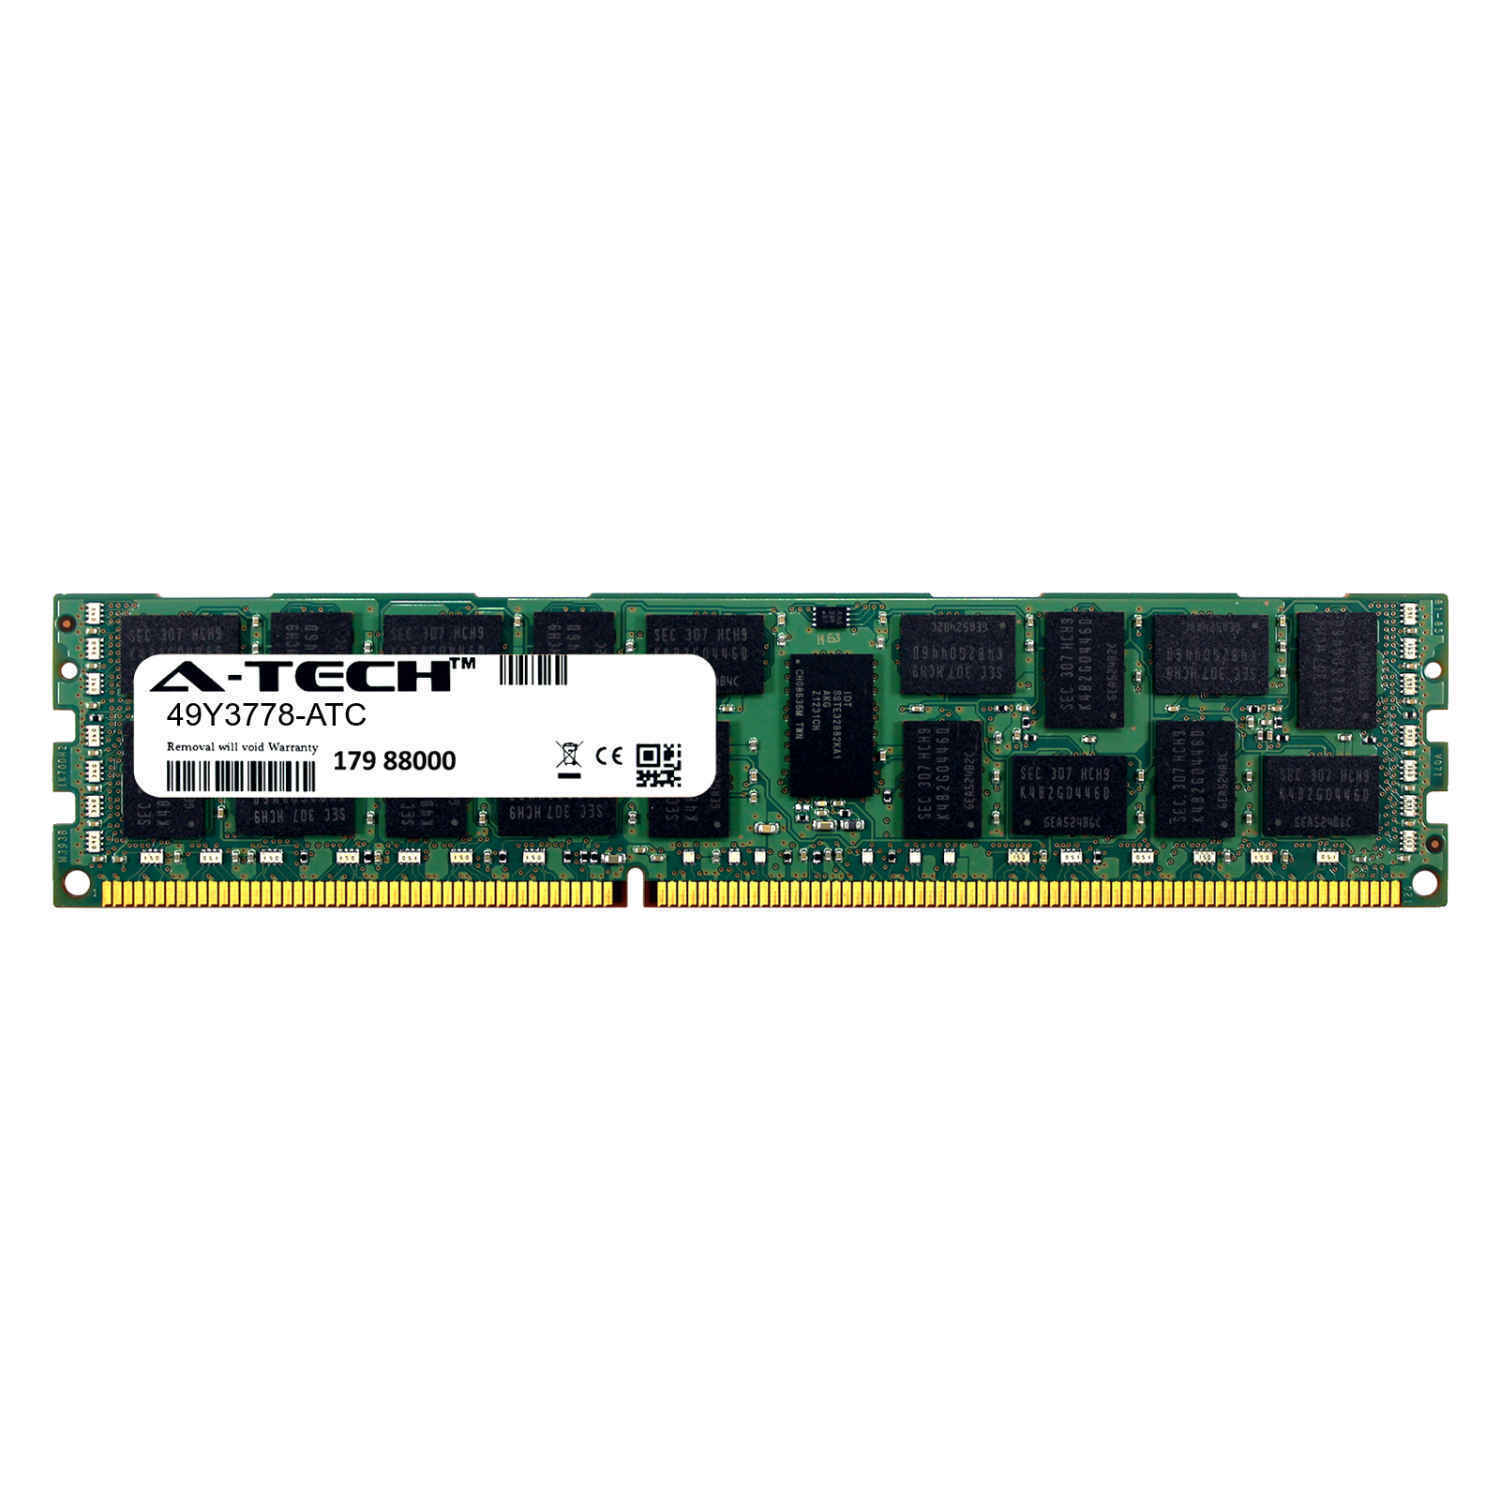 8GB DDR3 PC3-10600R 1333MHz RDIMM (IBM 49Y3778 Equivalent) Server Memory RAM